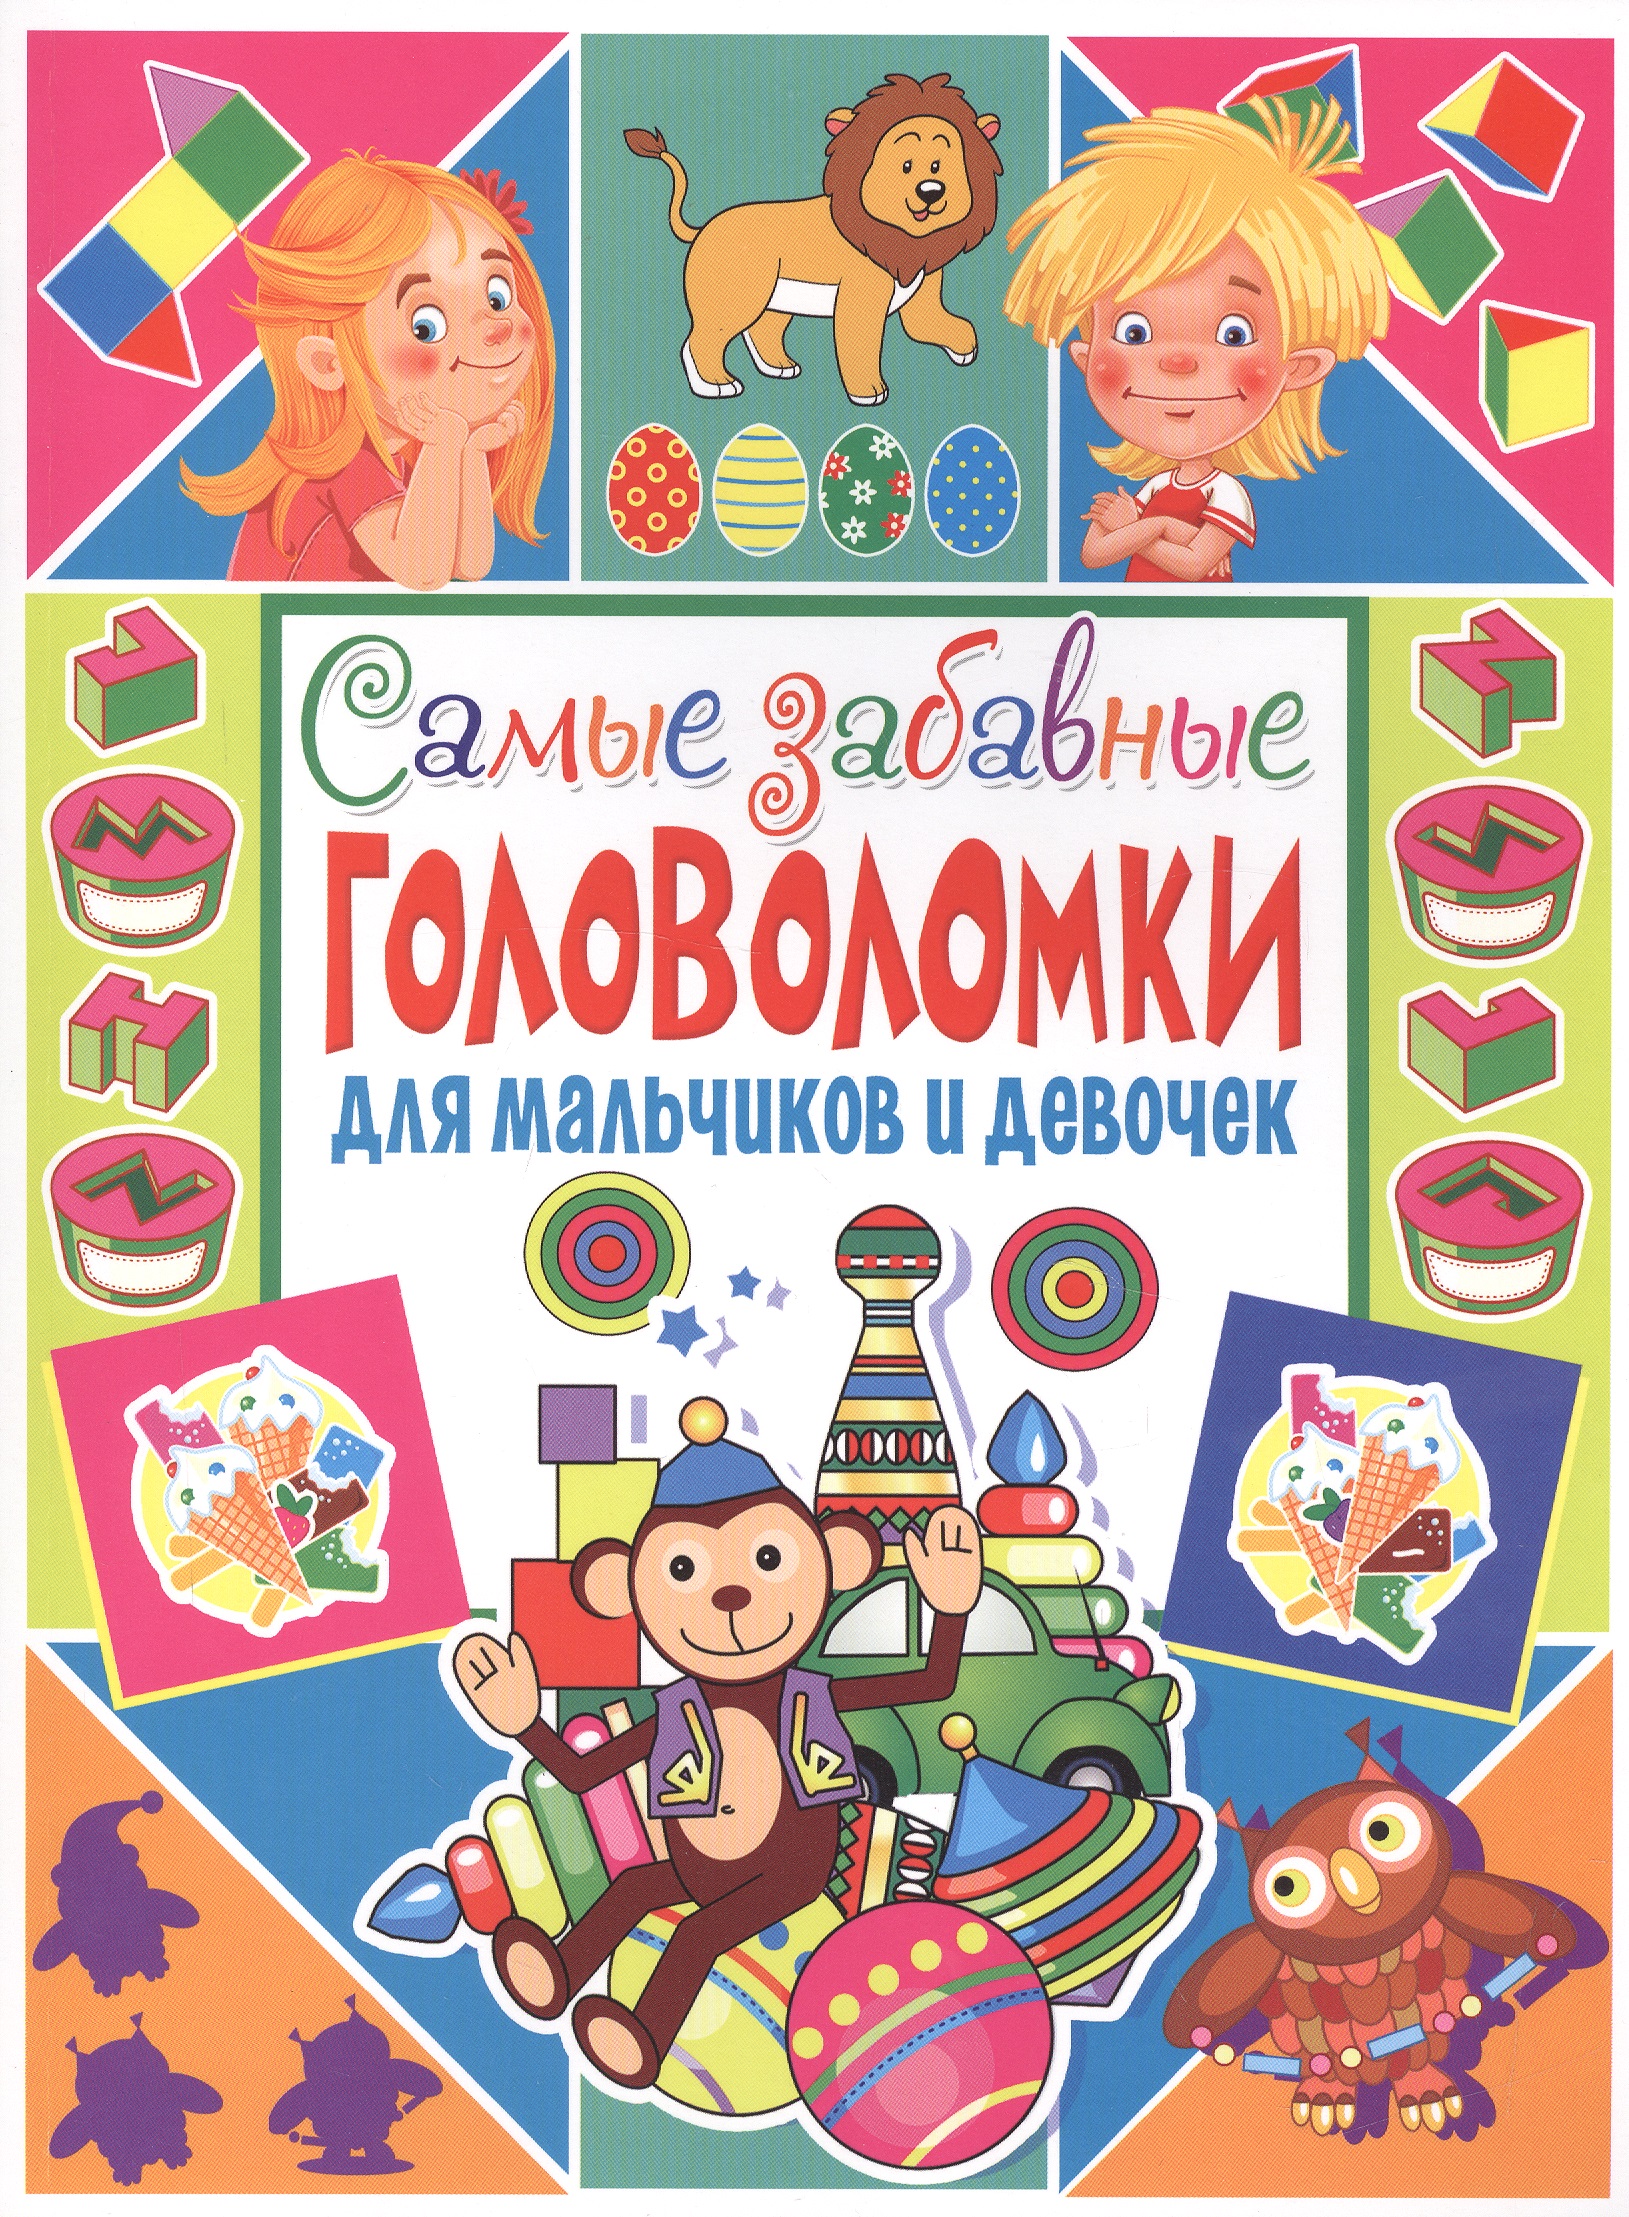 самые увлекательные головоломки для мальчиков и девочек Скиба Тамара Викторовна Самые забавные головоломки для мальчиков и девочек